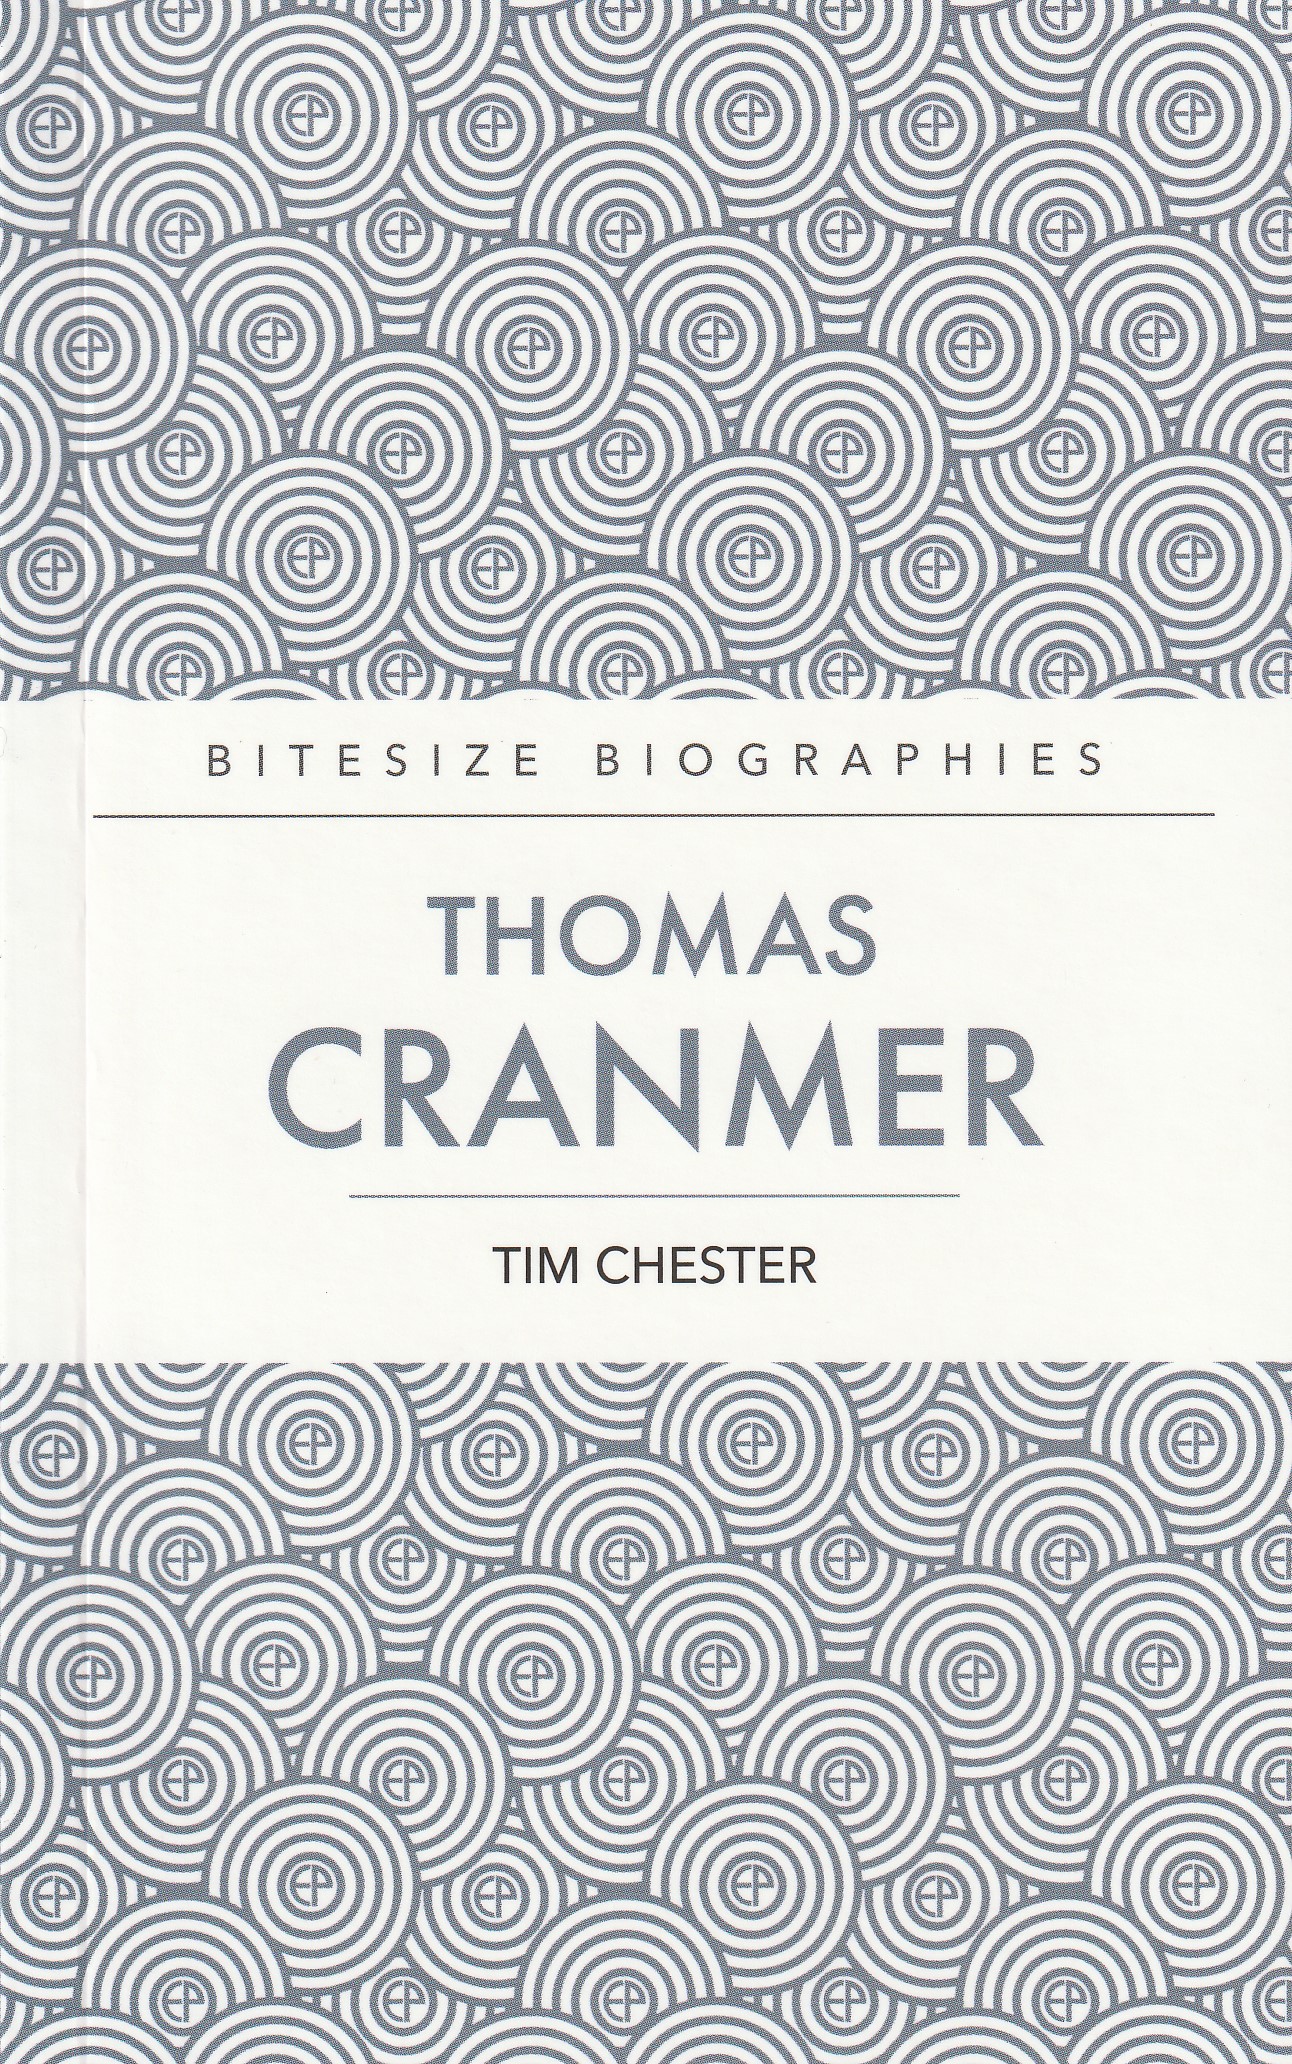 Bitesize Biography: Thomas Cranmer